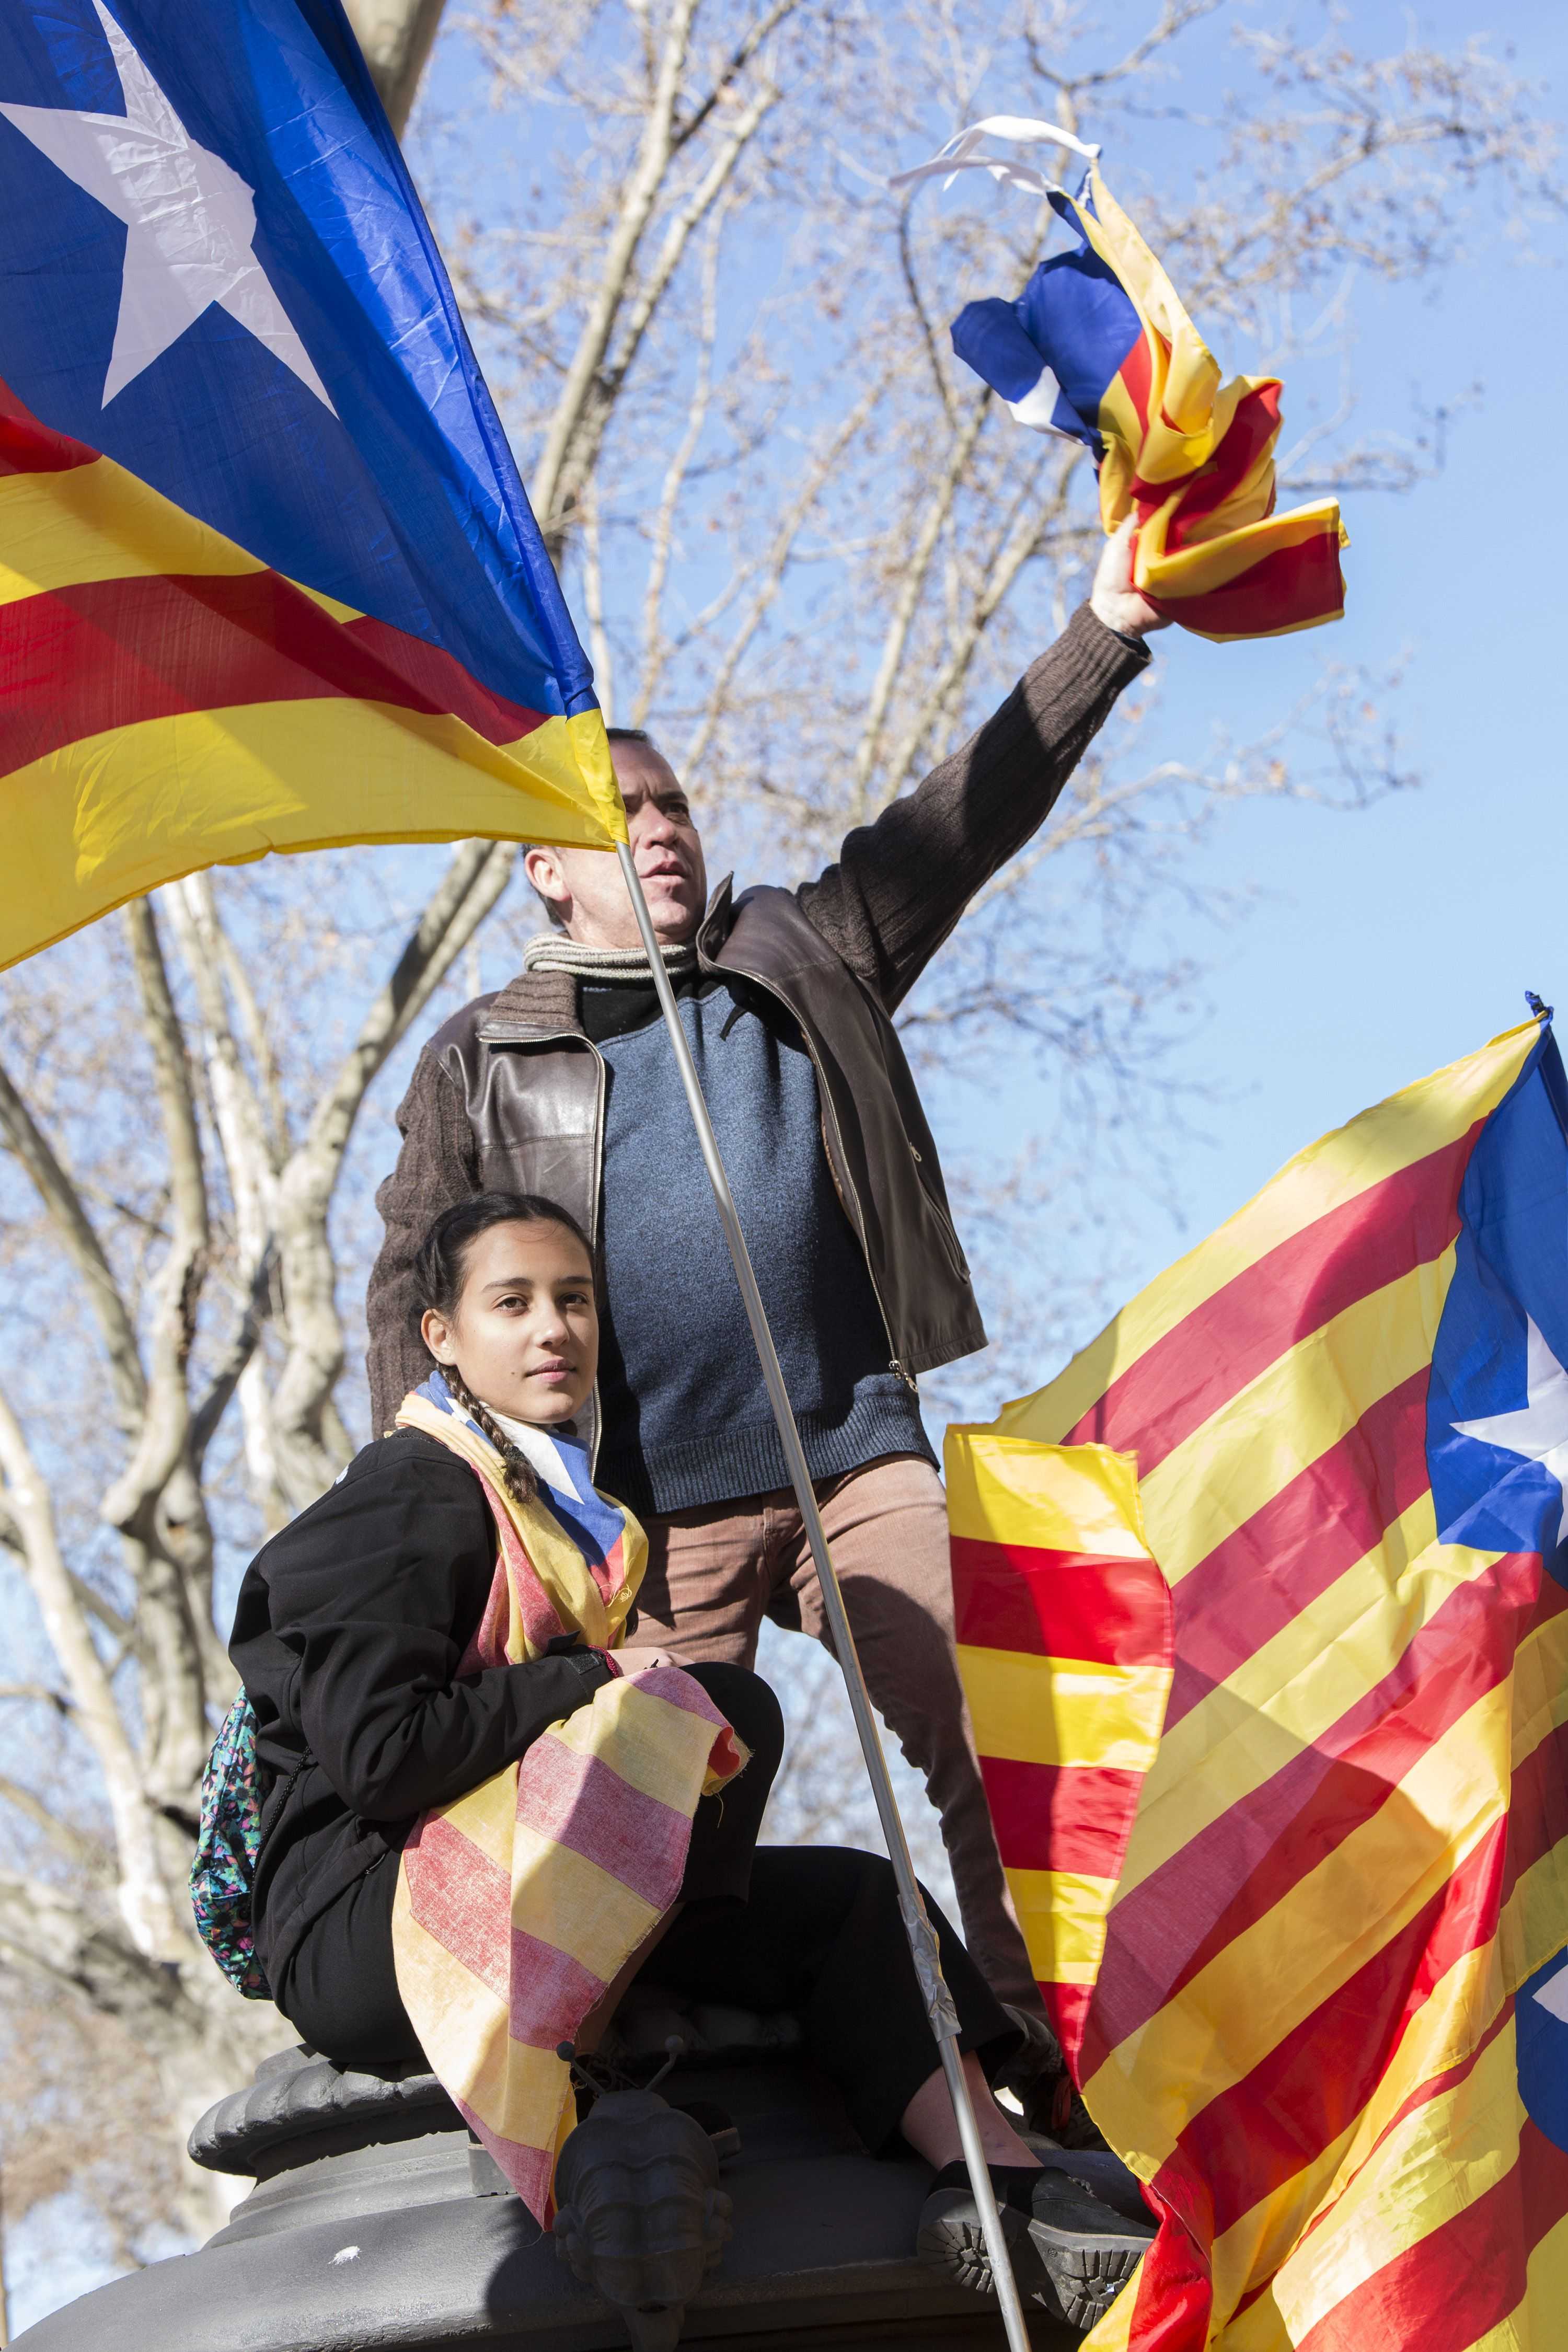 Catalunya emprende un "proceso político inédito en Europa", según la agencia argentina Télam